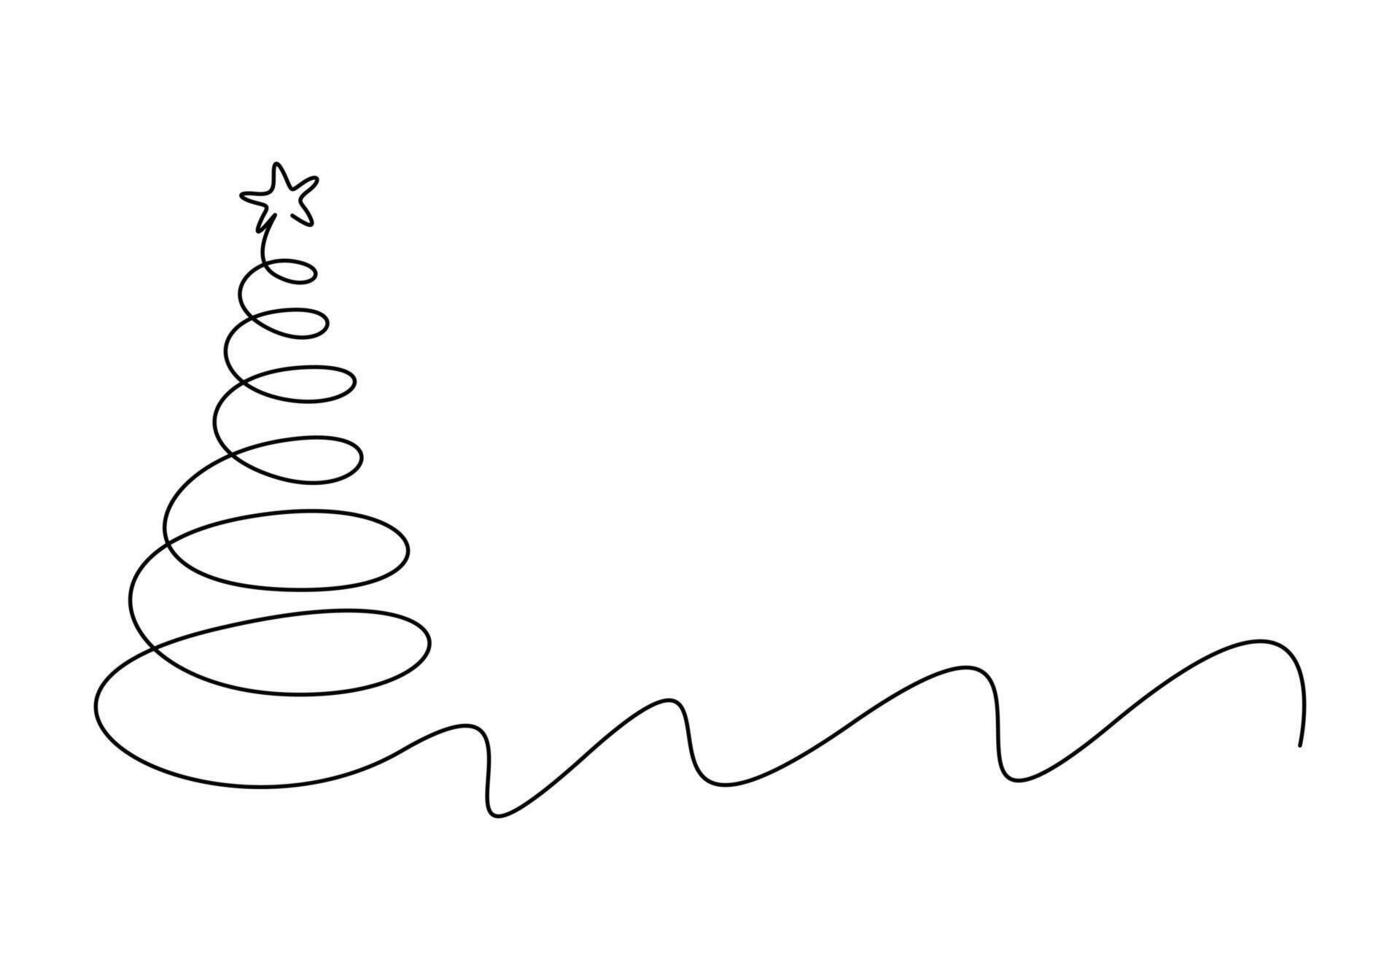 jul träd kontinuerlig ett linje teckning vektor illustration. isolerat på vit bakgrund vektor illustration